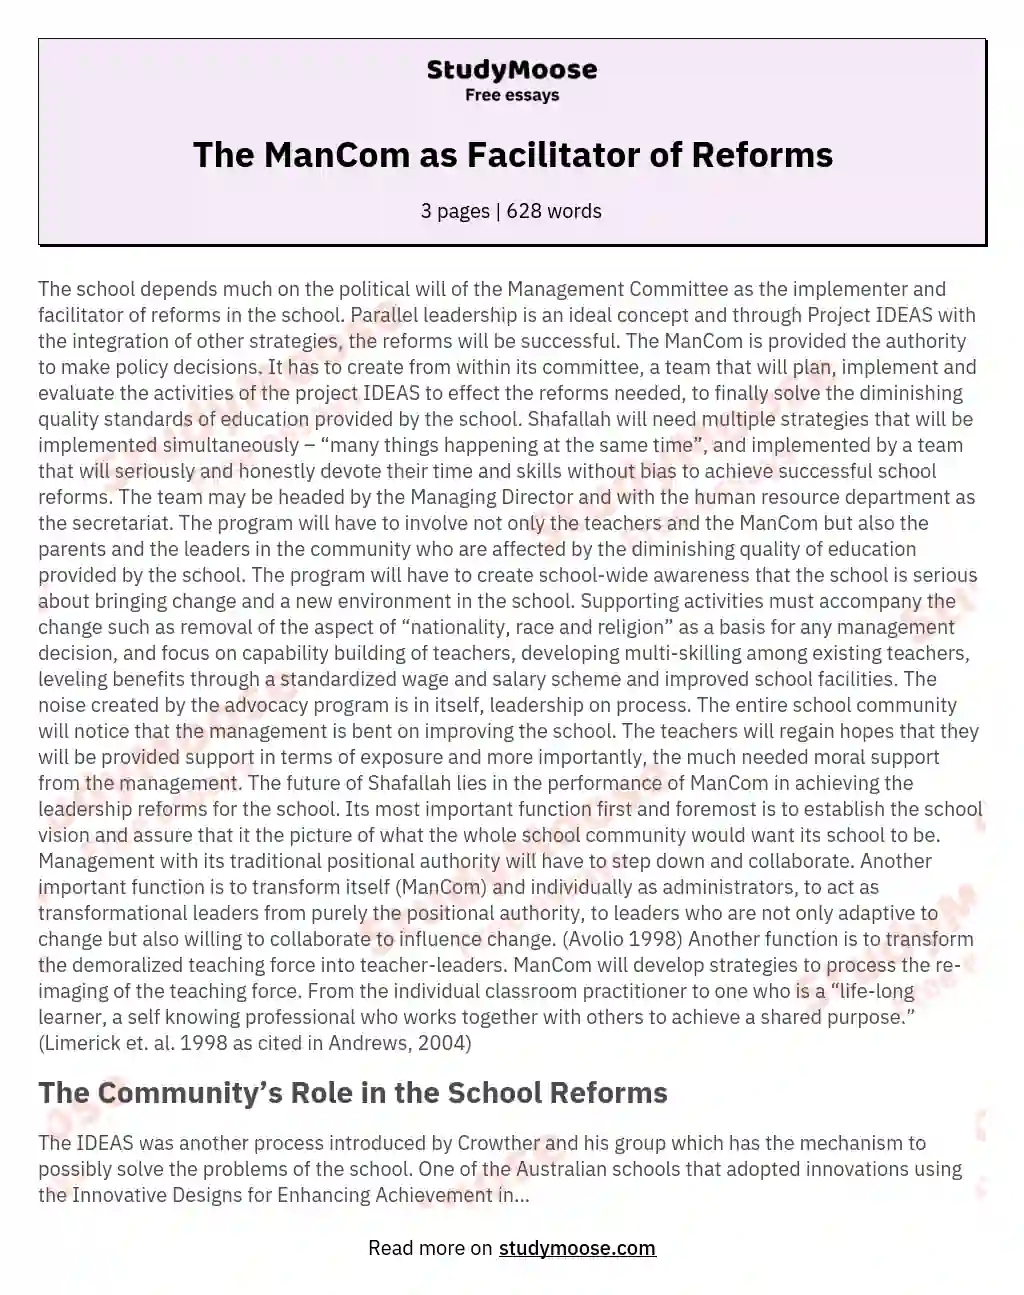 The ManCom as Facilitator of Reforms essay